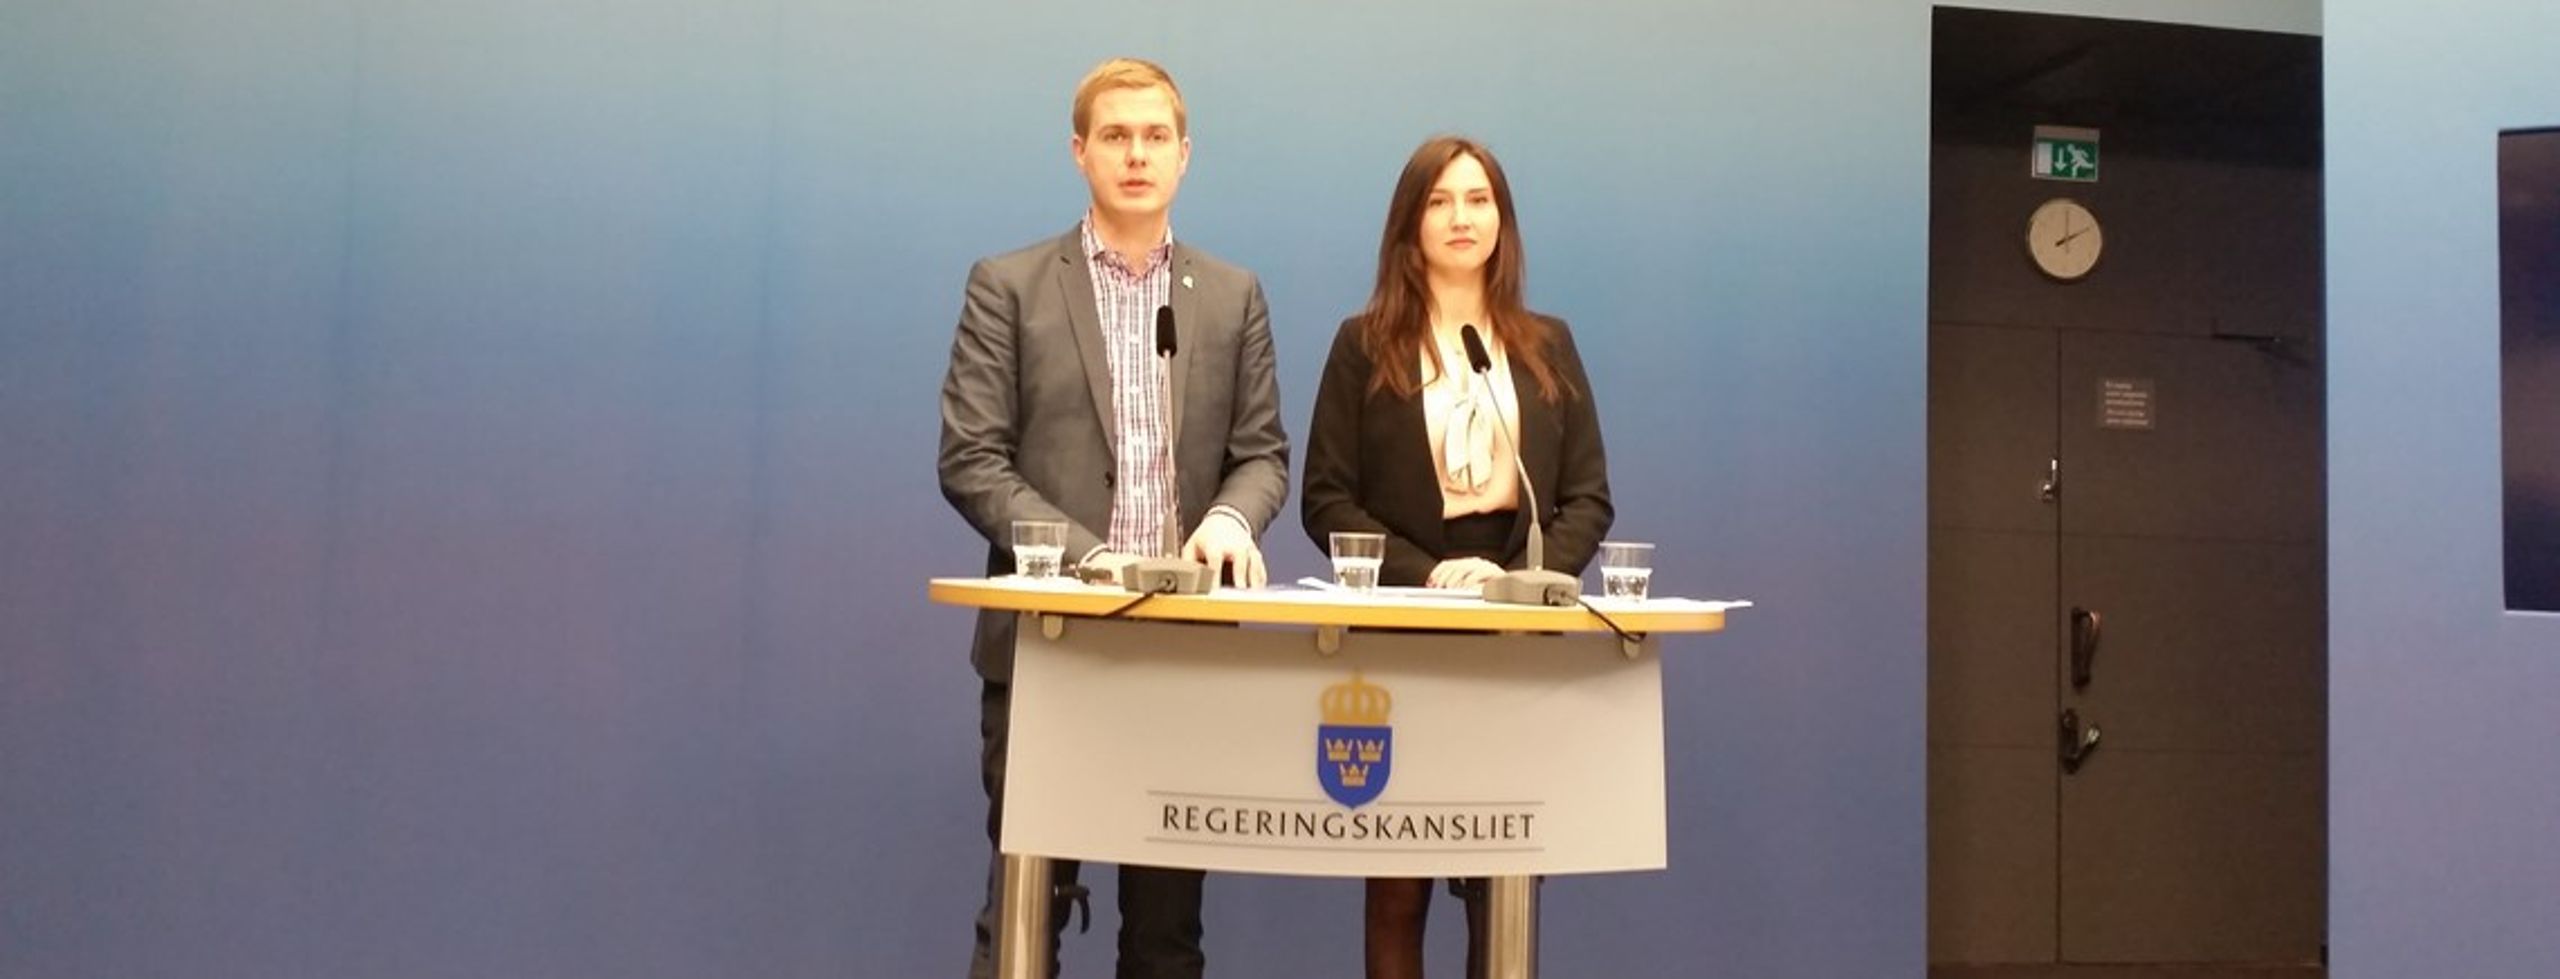 Ministrarna Gustav Fridolin och&nbsp;Aida Hadzialic presenterar skolkommissionen